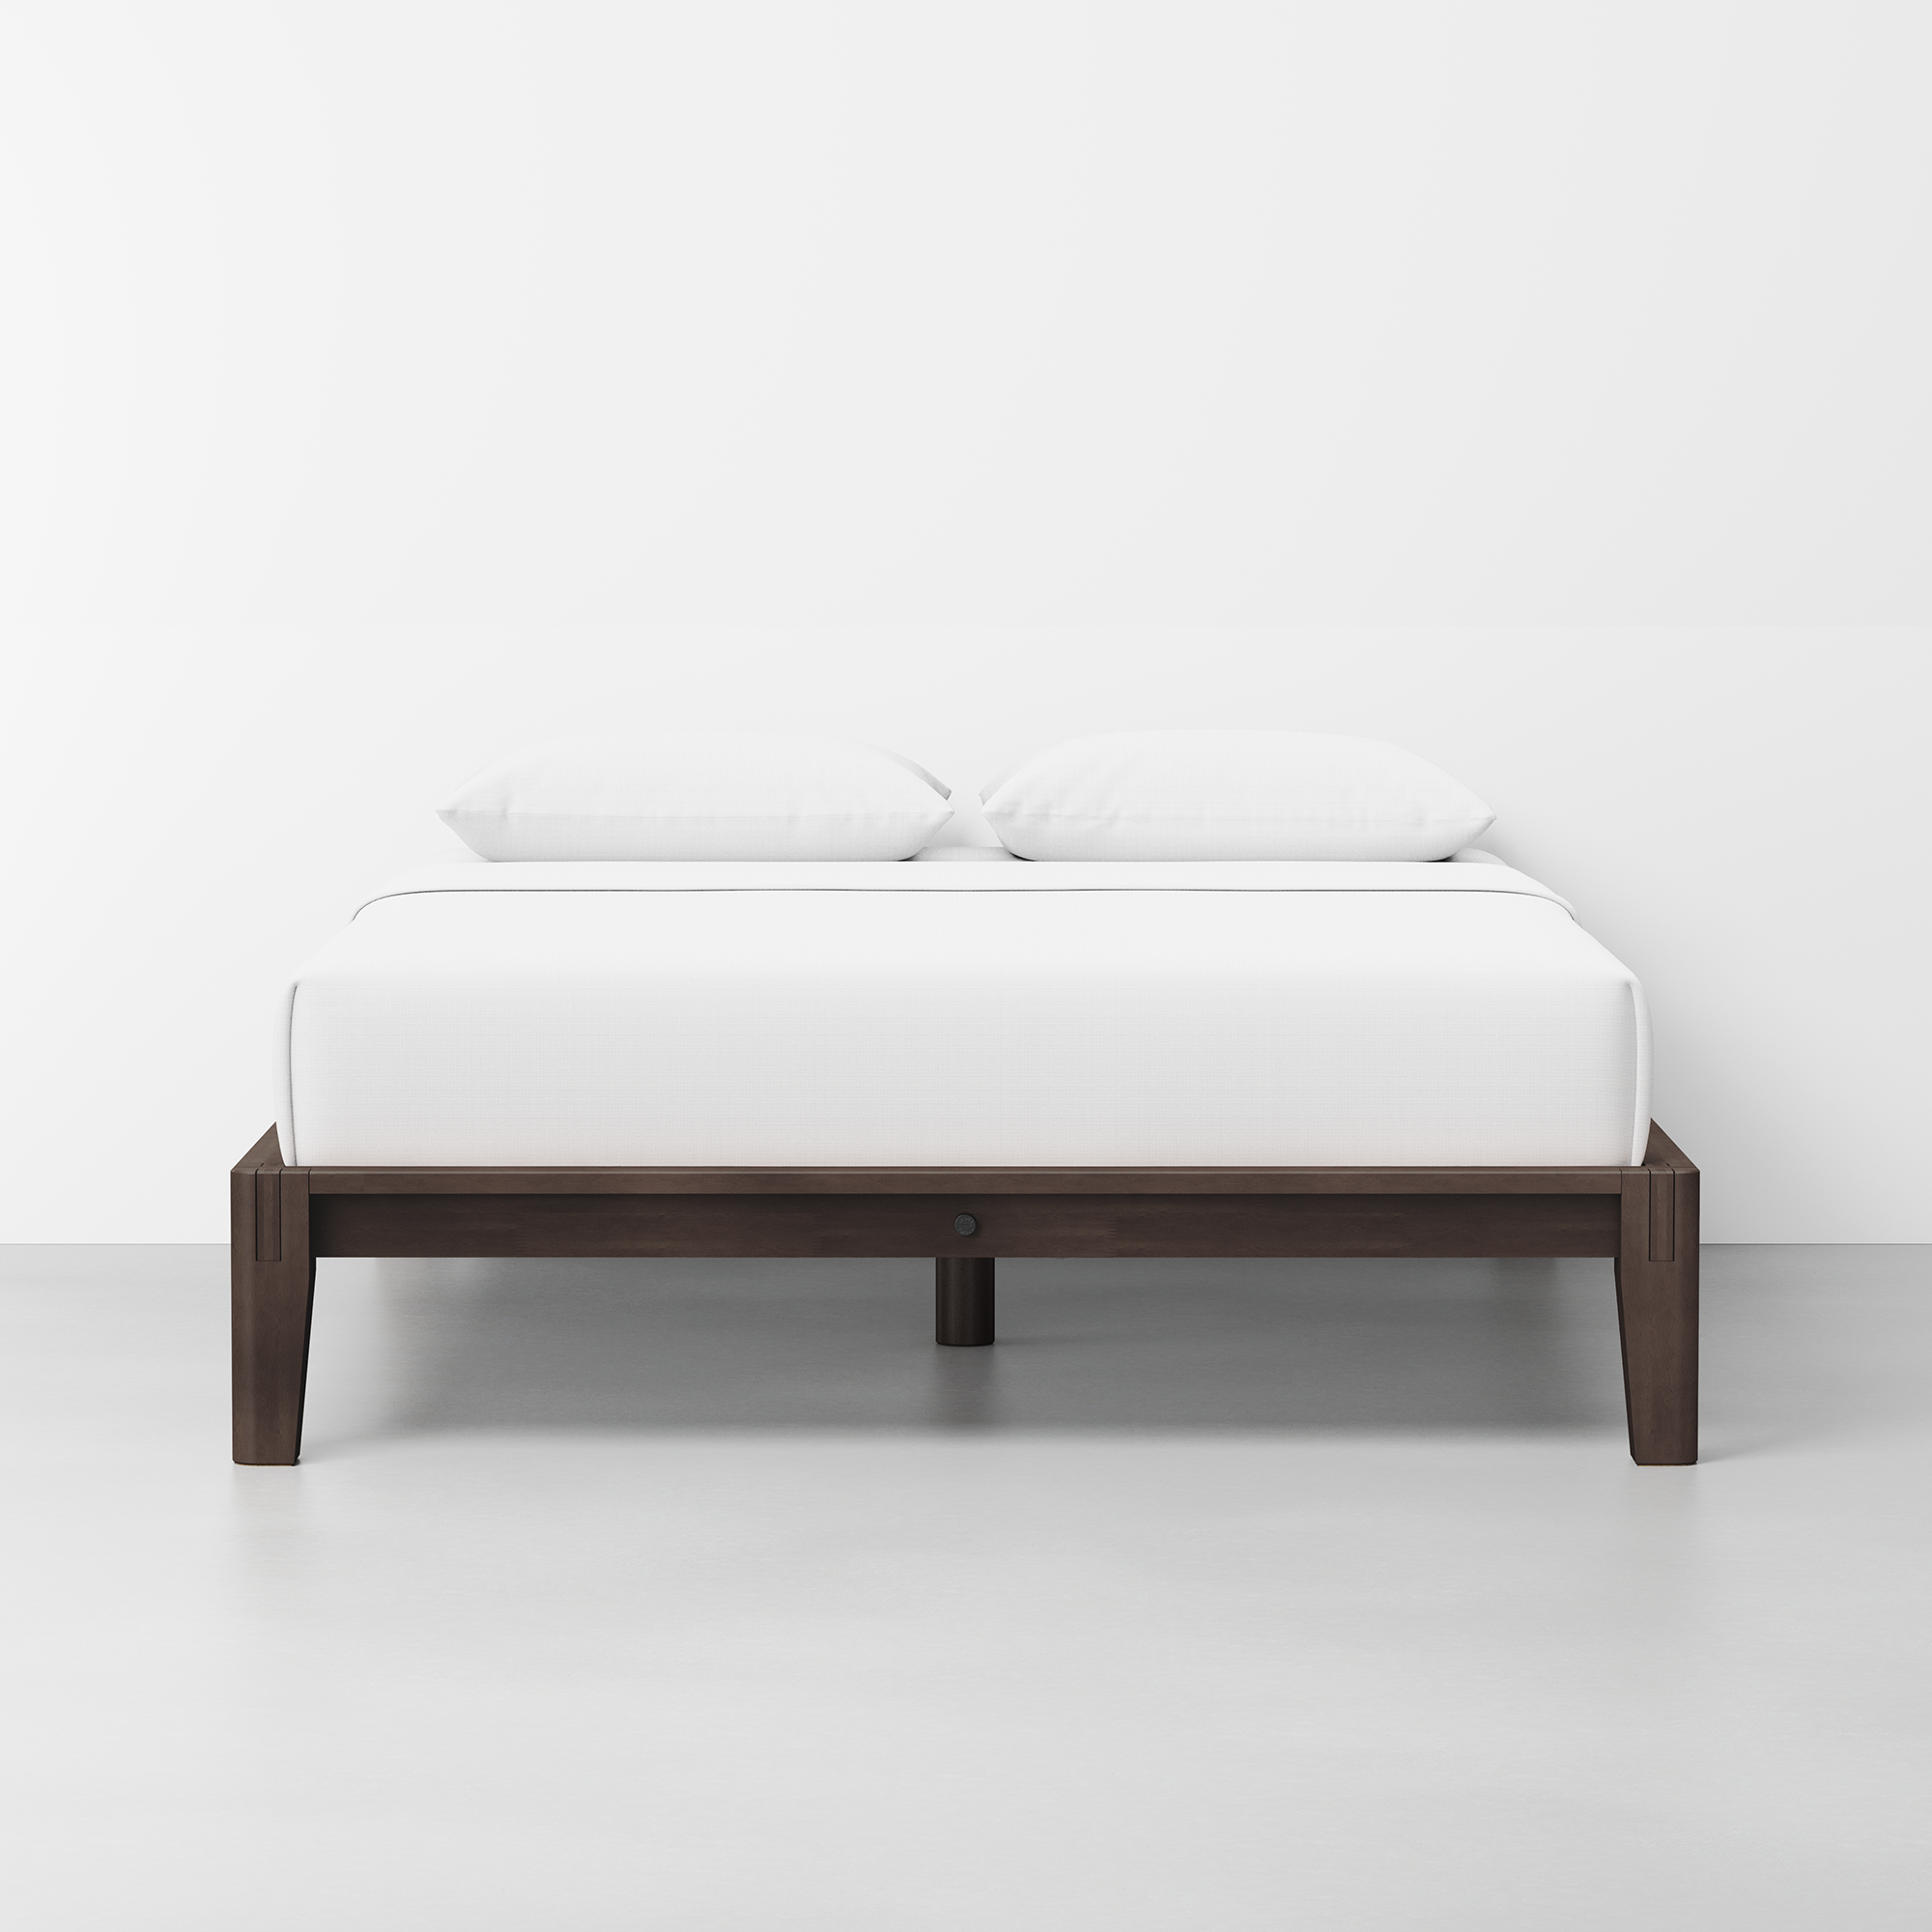 The Bed (Espresso / Frame) - Render - Front